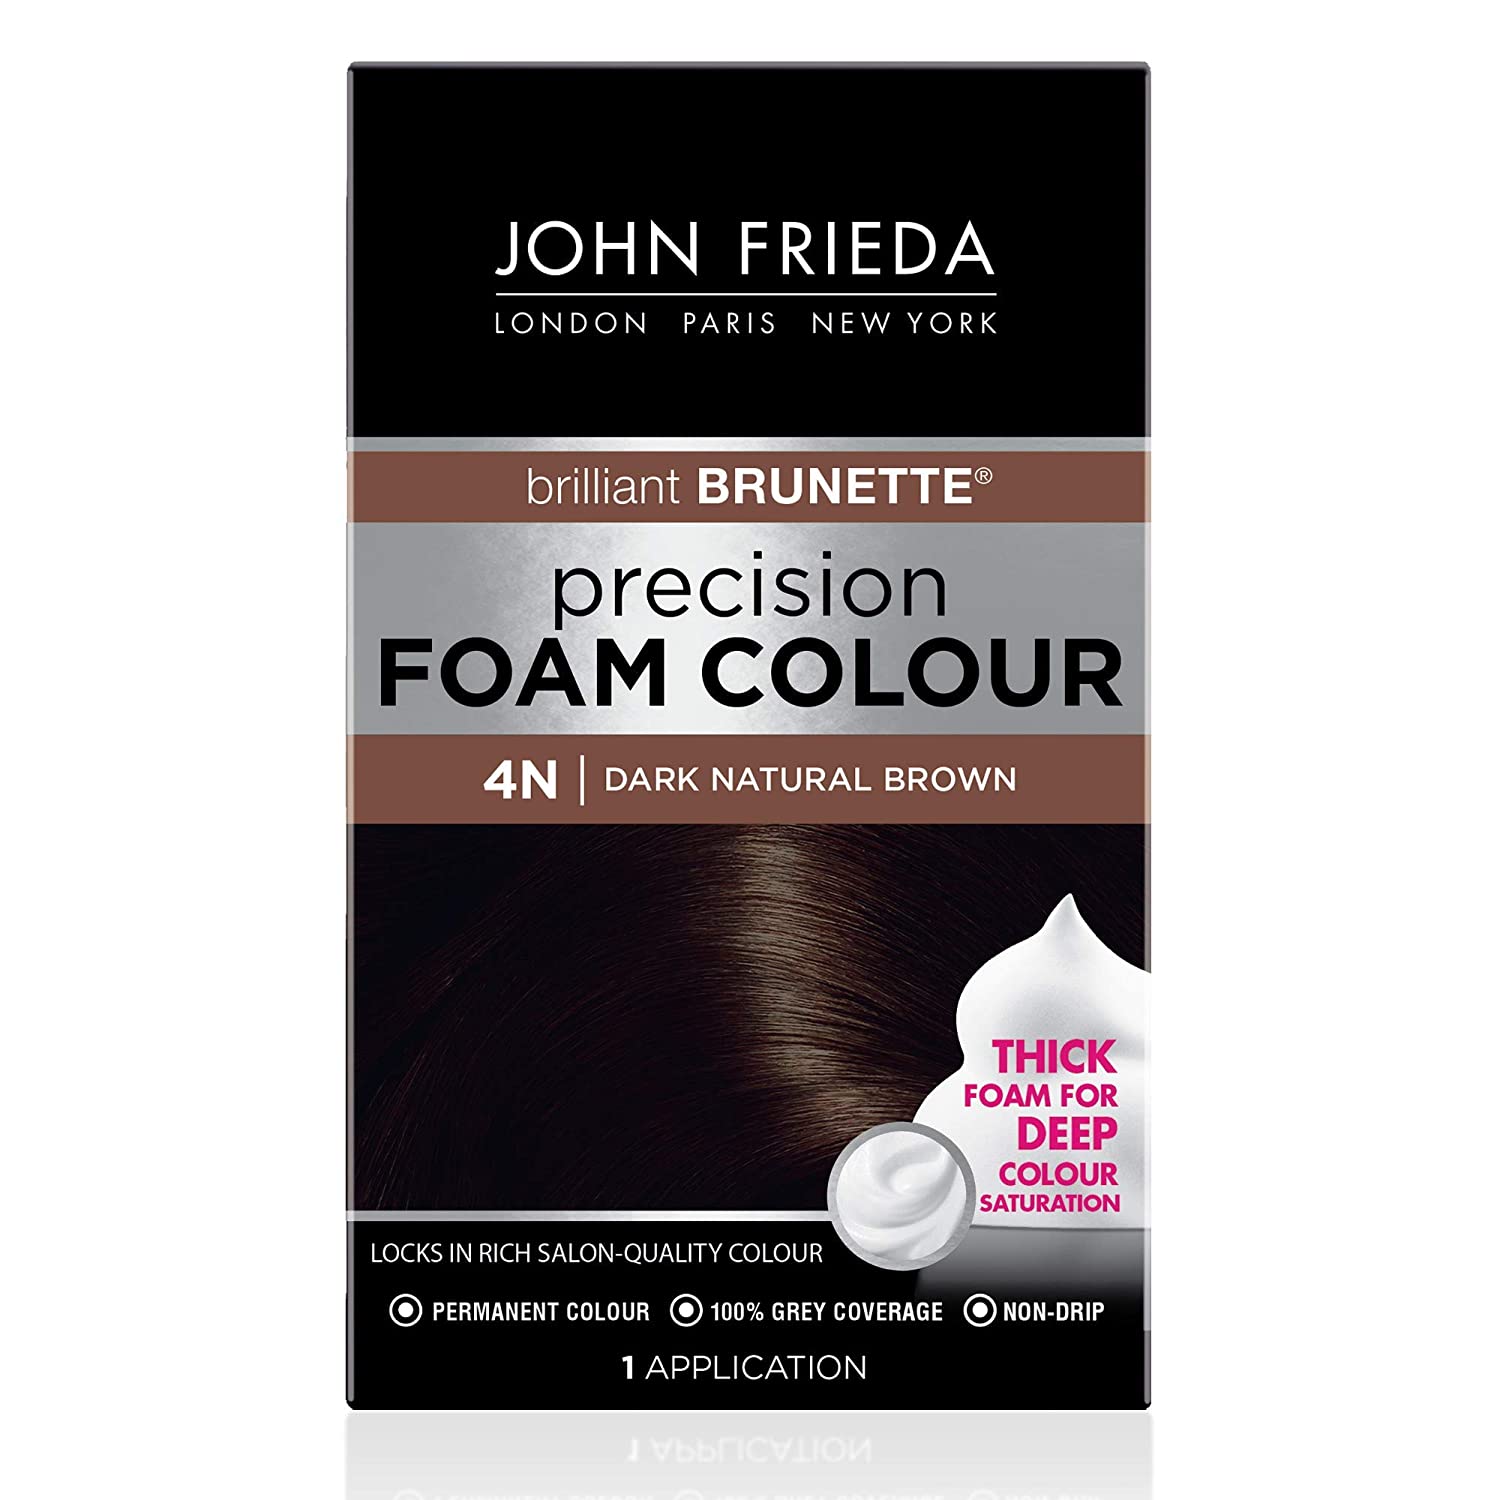 John Frieda Precision Foam Color in Dark Natural Brown 